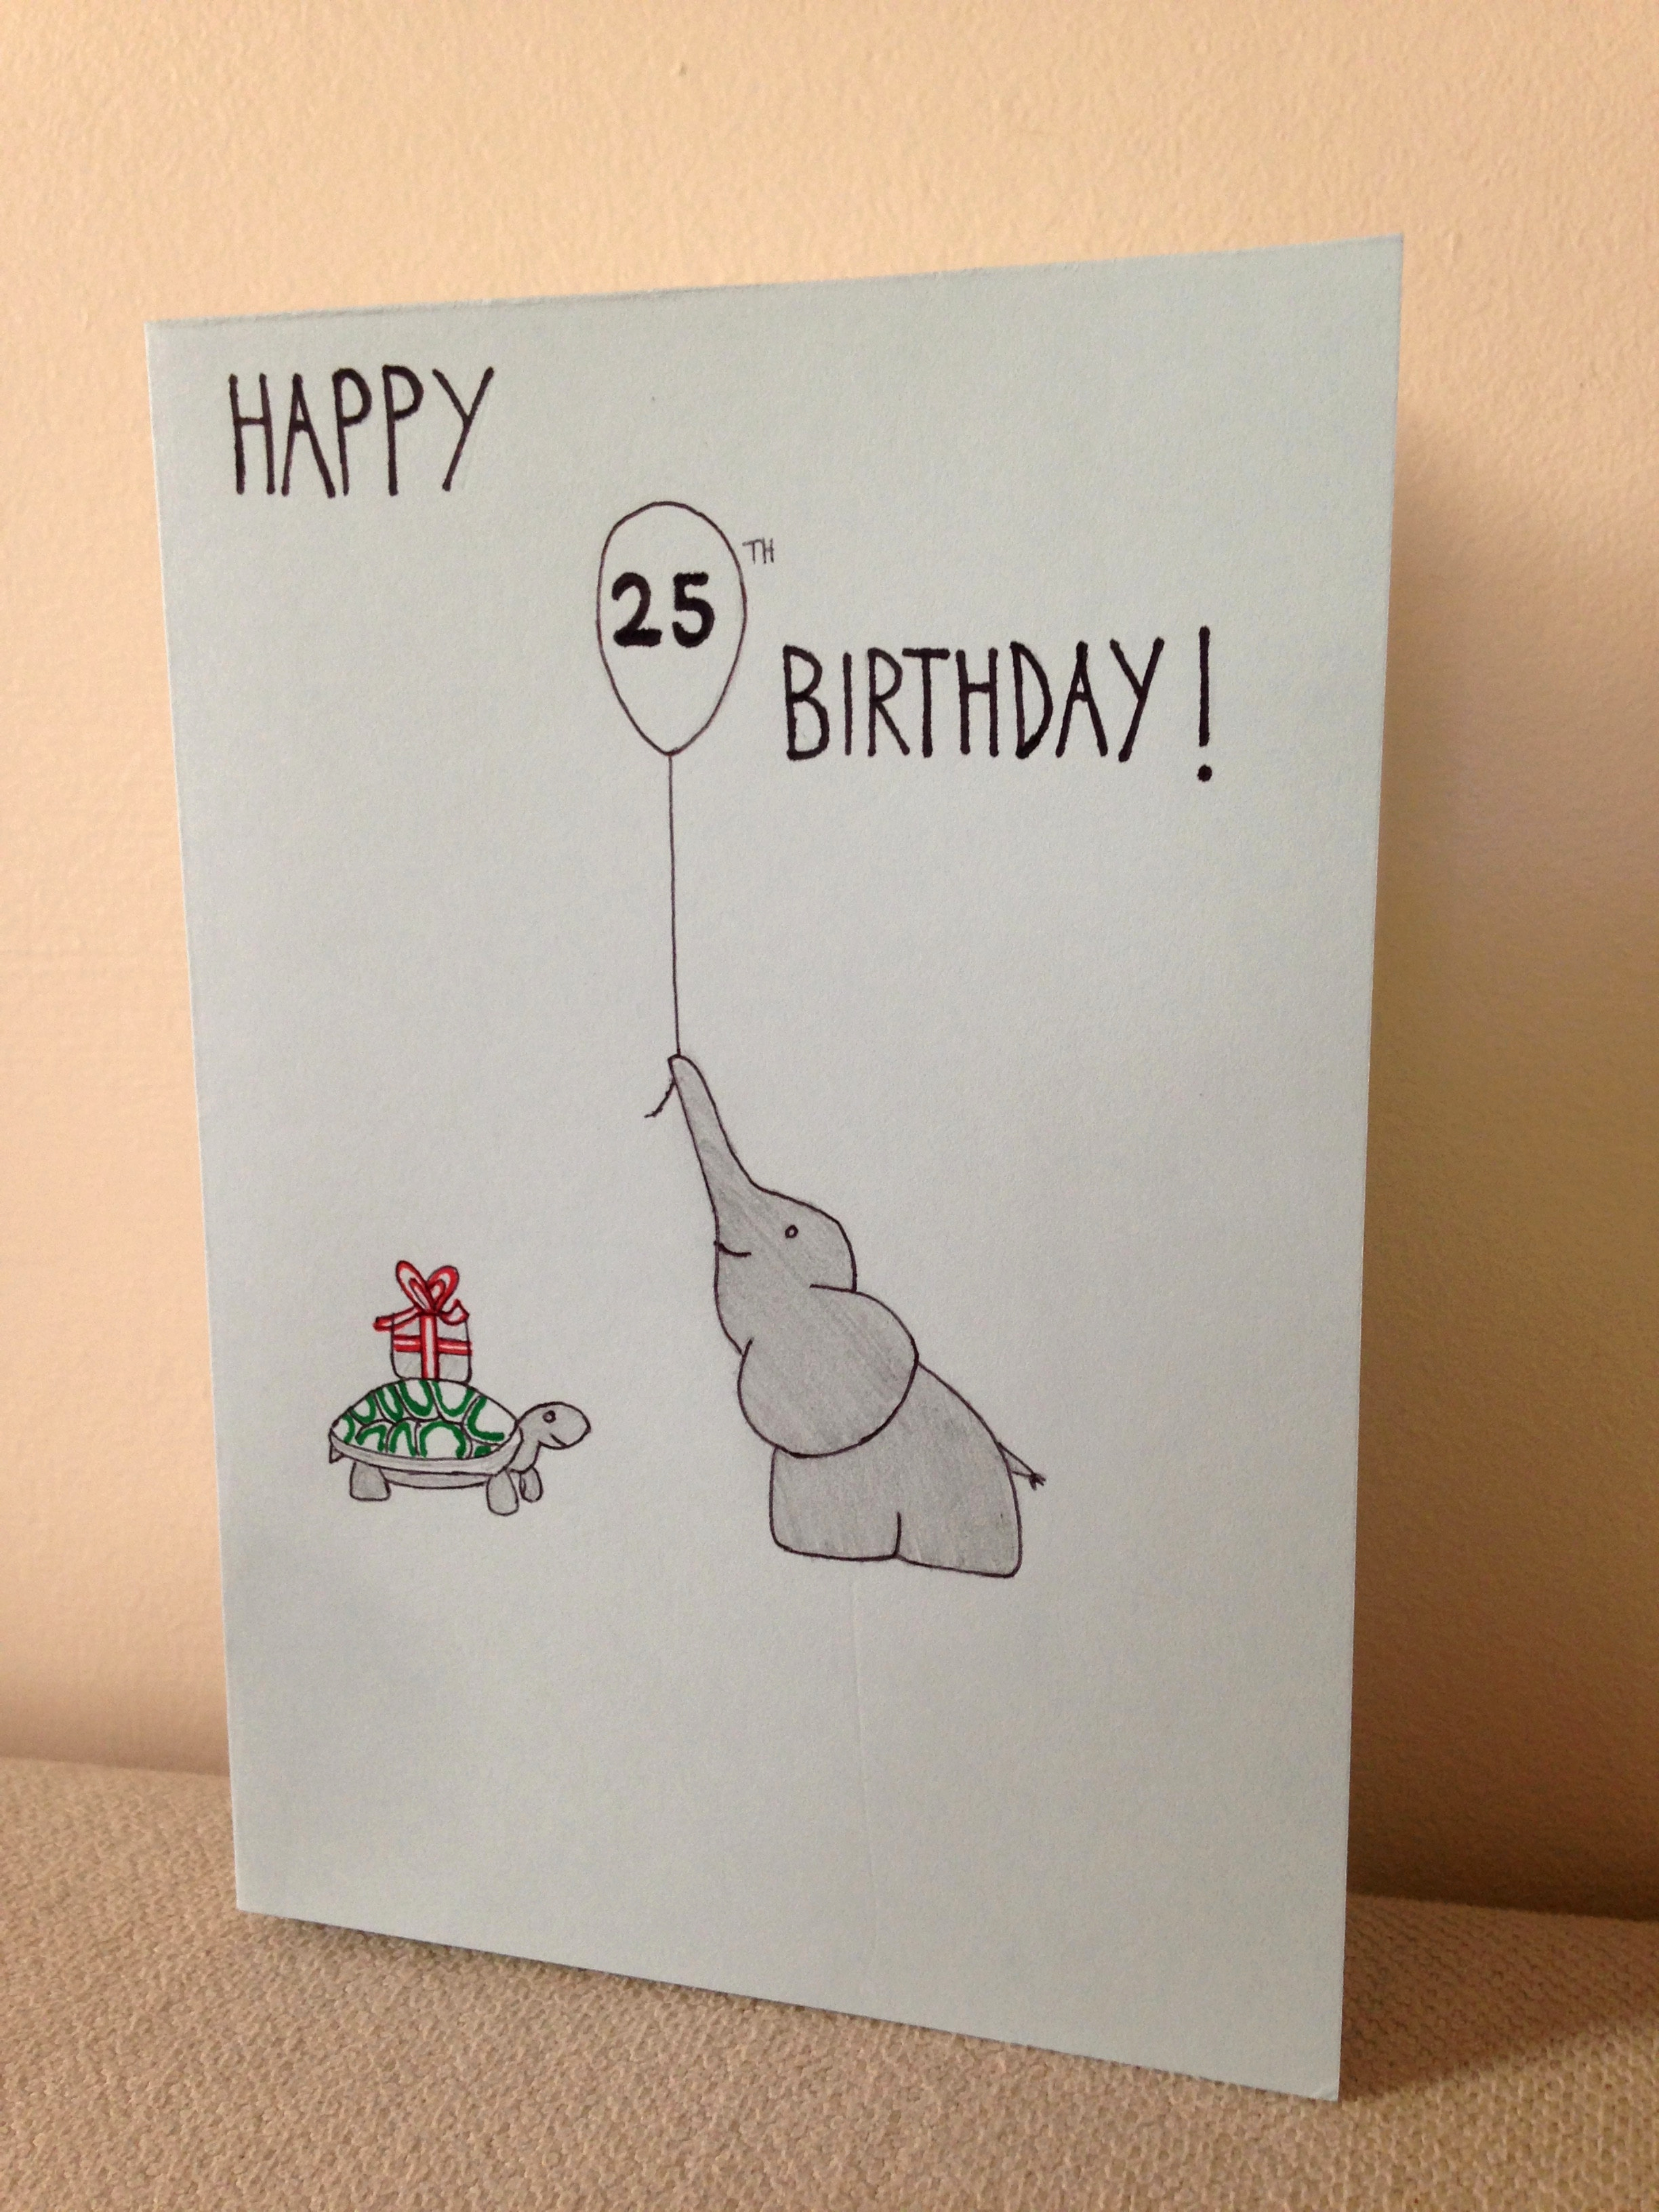 25Th Birthday Card Ideas 25 Birthday Card New Boyfriend Christmas Card Basic Awesome Birthday